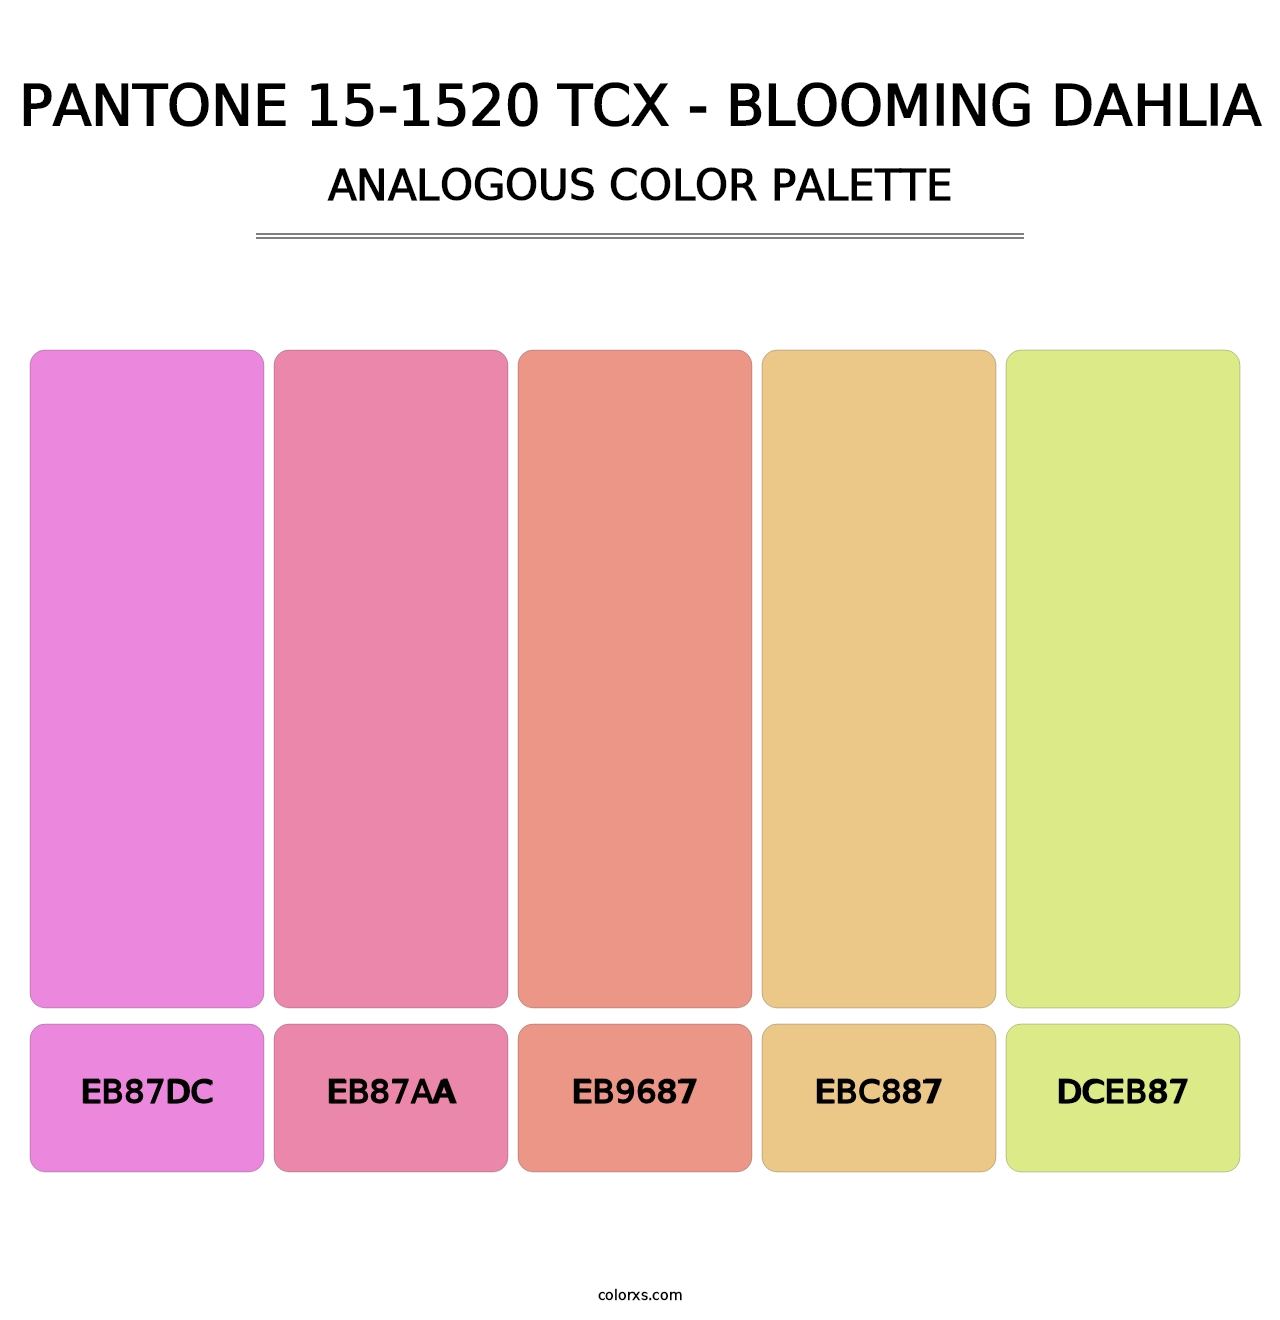 PANTONE 15-1520 TCX - Blooming Dahlia - Analogous Color Palette